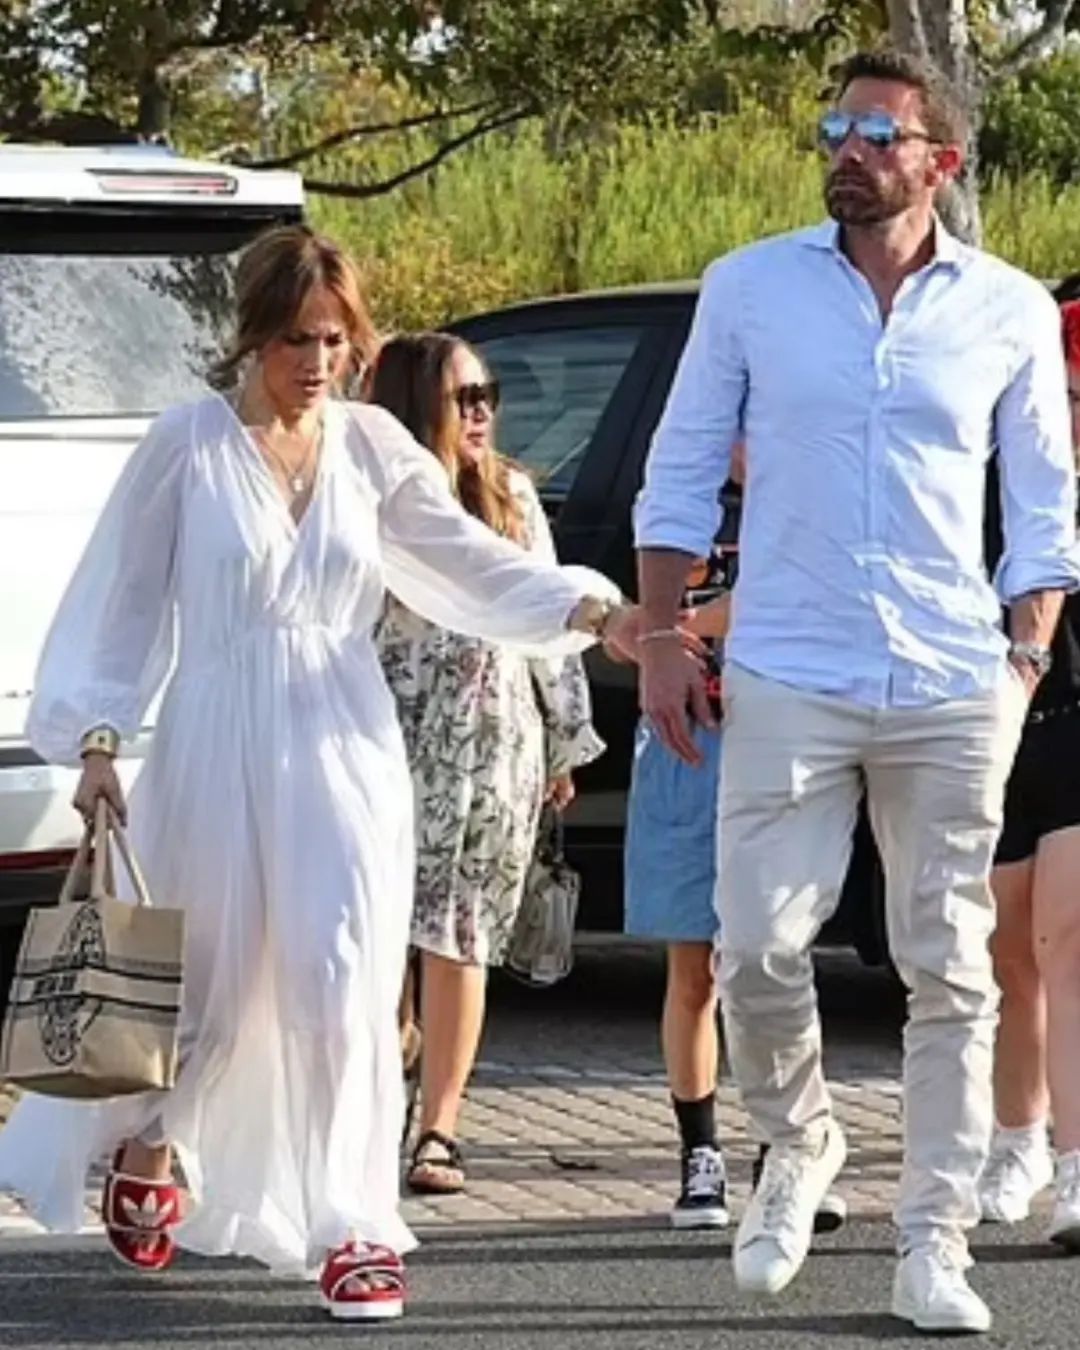 Найбезглуздіший образ: Дженніфер Лопес у білій напівпрозорій сукні сходила з дітьми та чоловіком на ярмарок